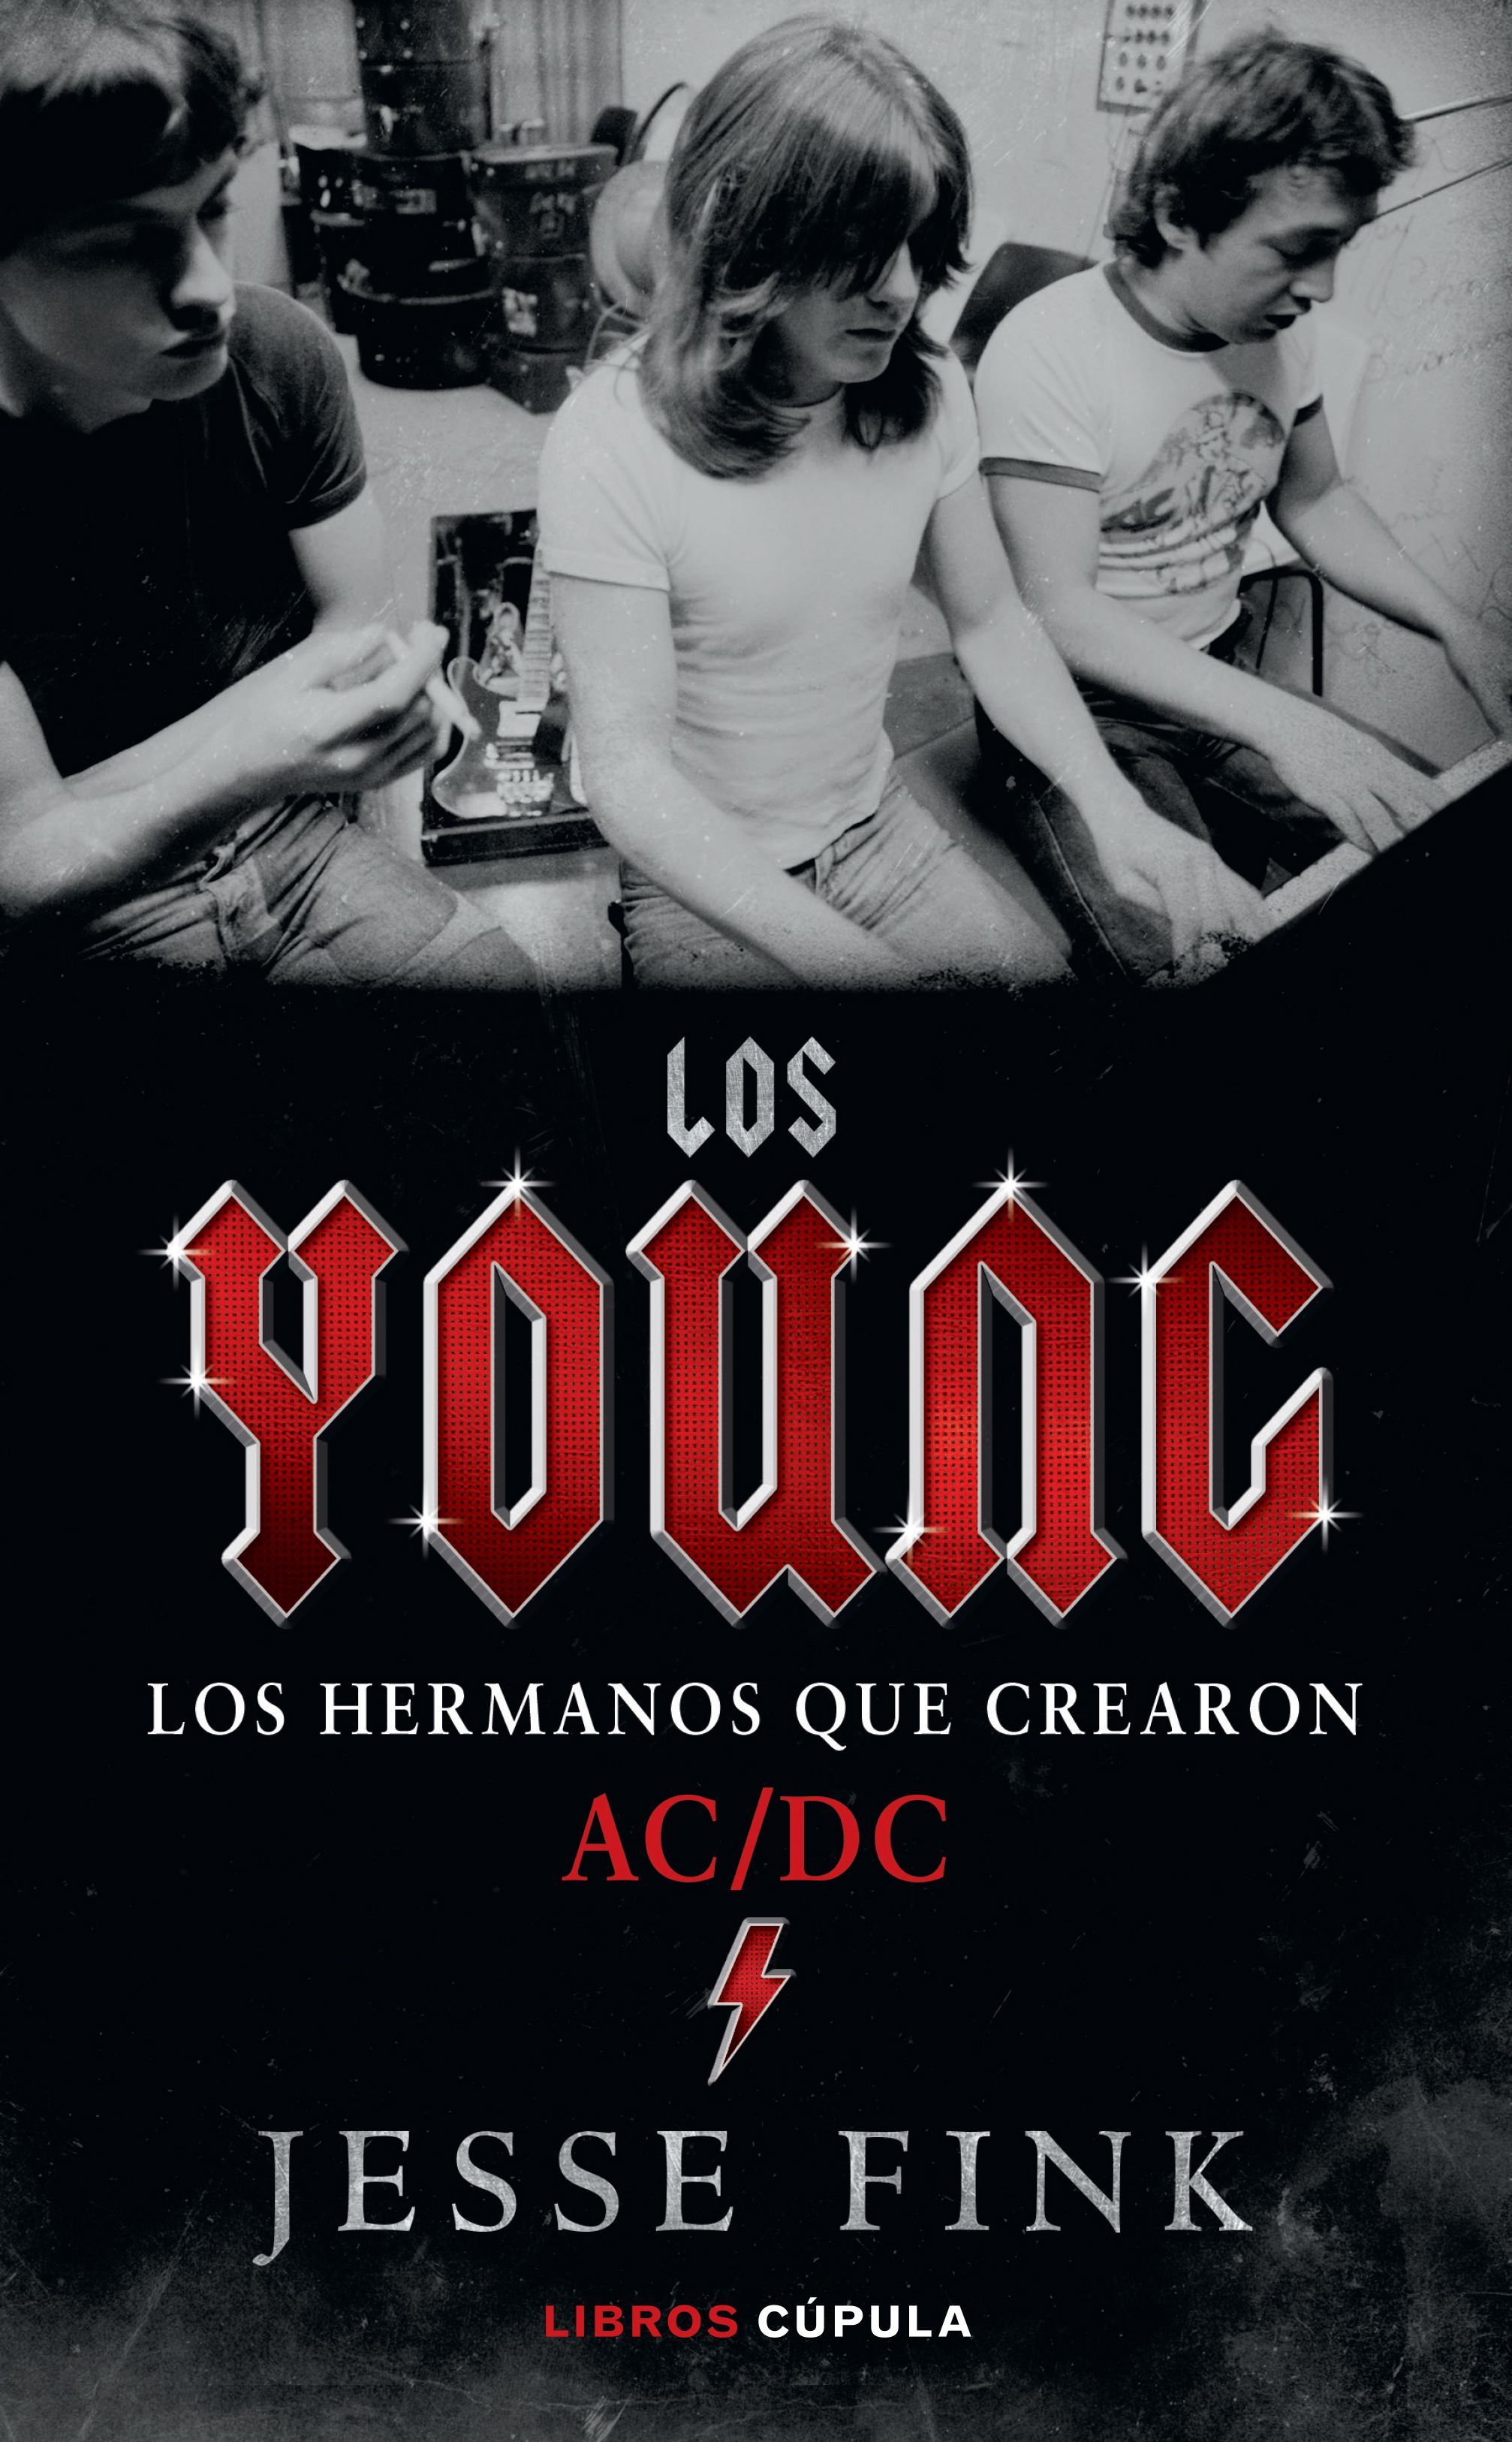 'Los Young', la historia magistralmente contada de los hermanos que crearon AC/DC